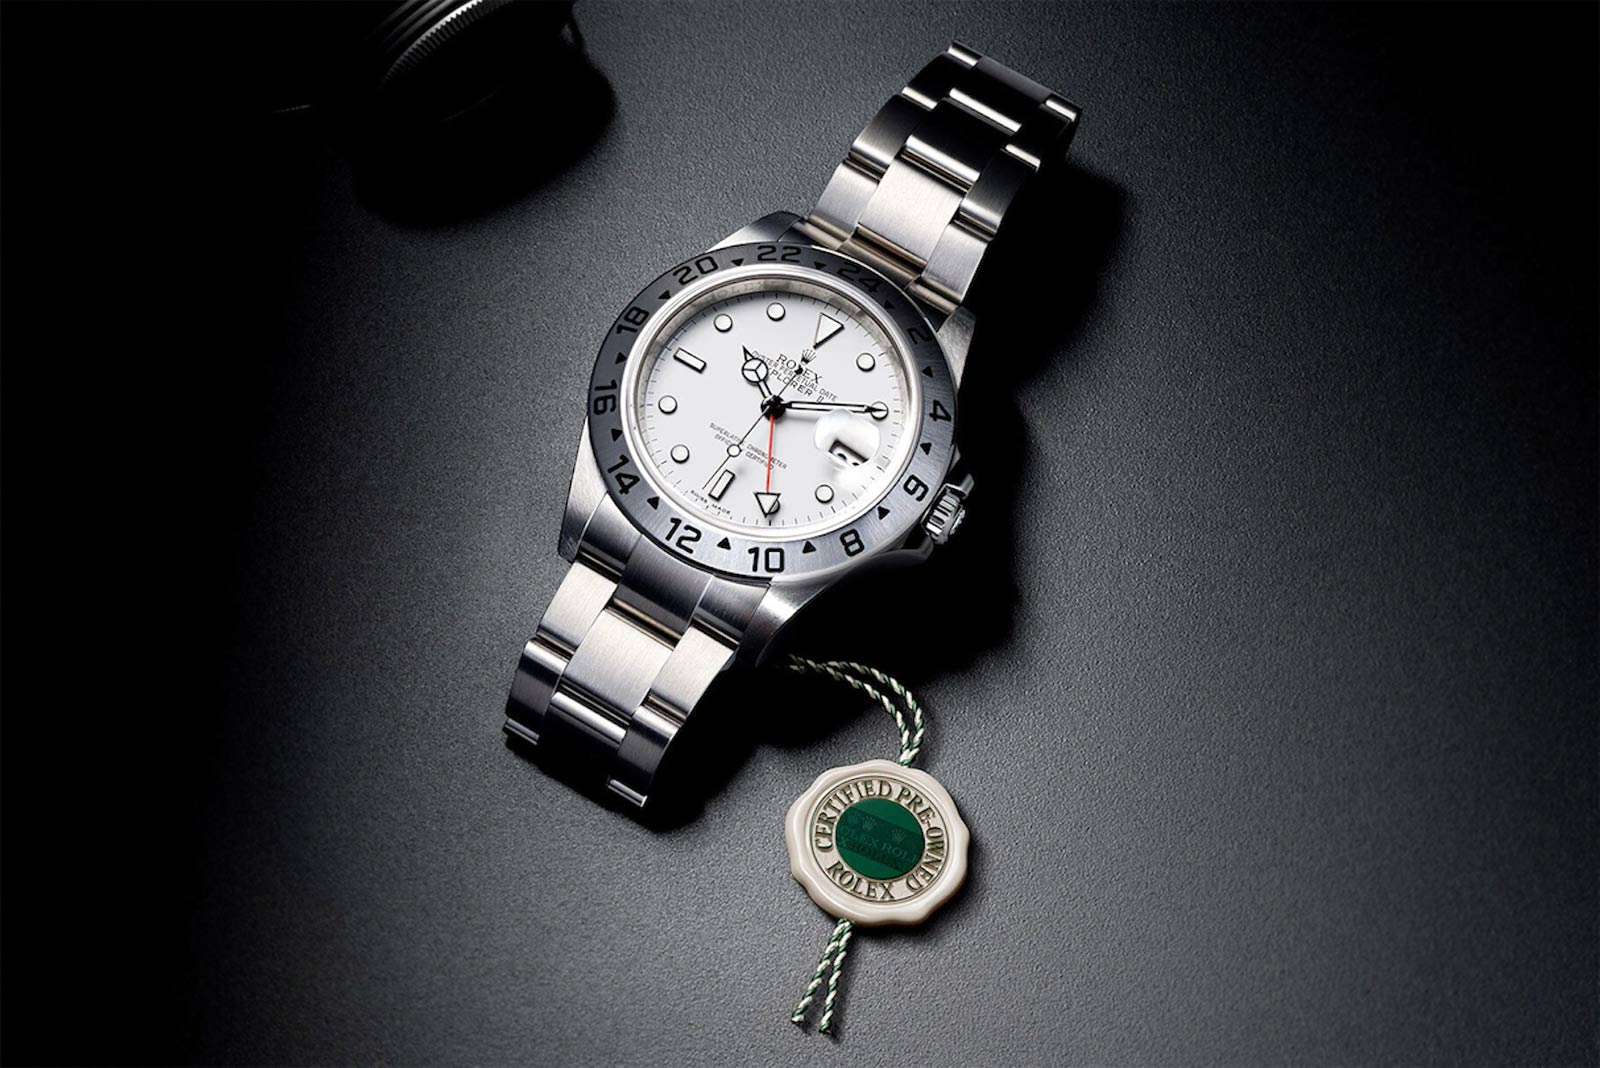 Tìm hiểu về "Rolex Certified Pre-Owned" giấy chứng nhận đồng hồ Rolex cũ mới ra mắt